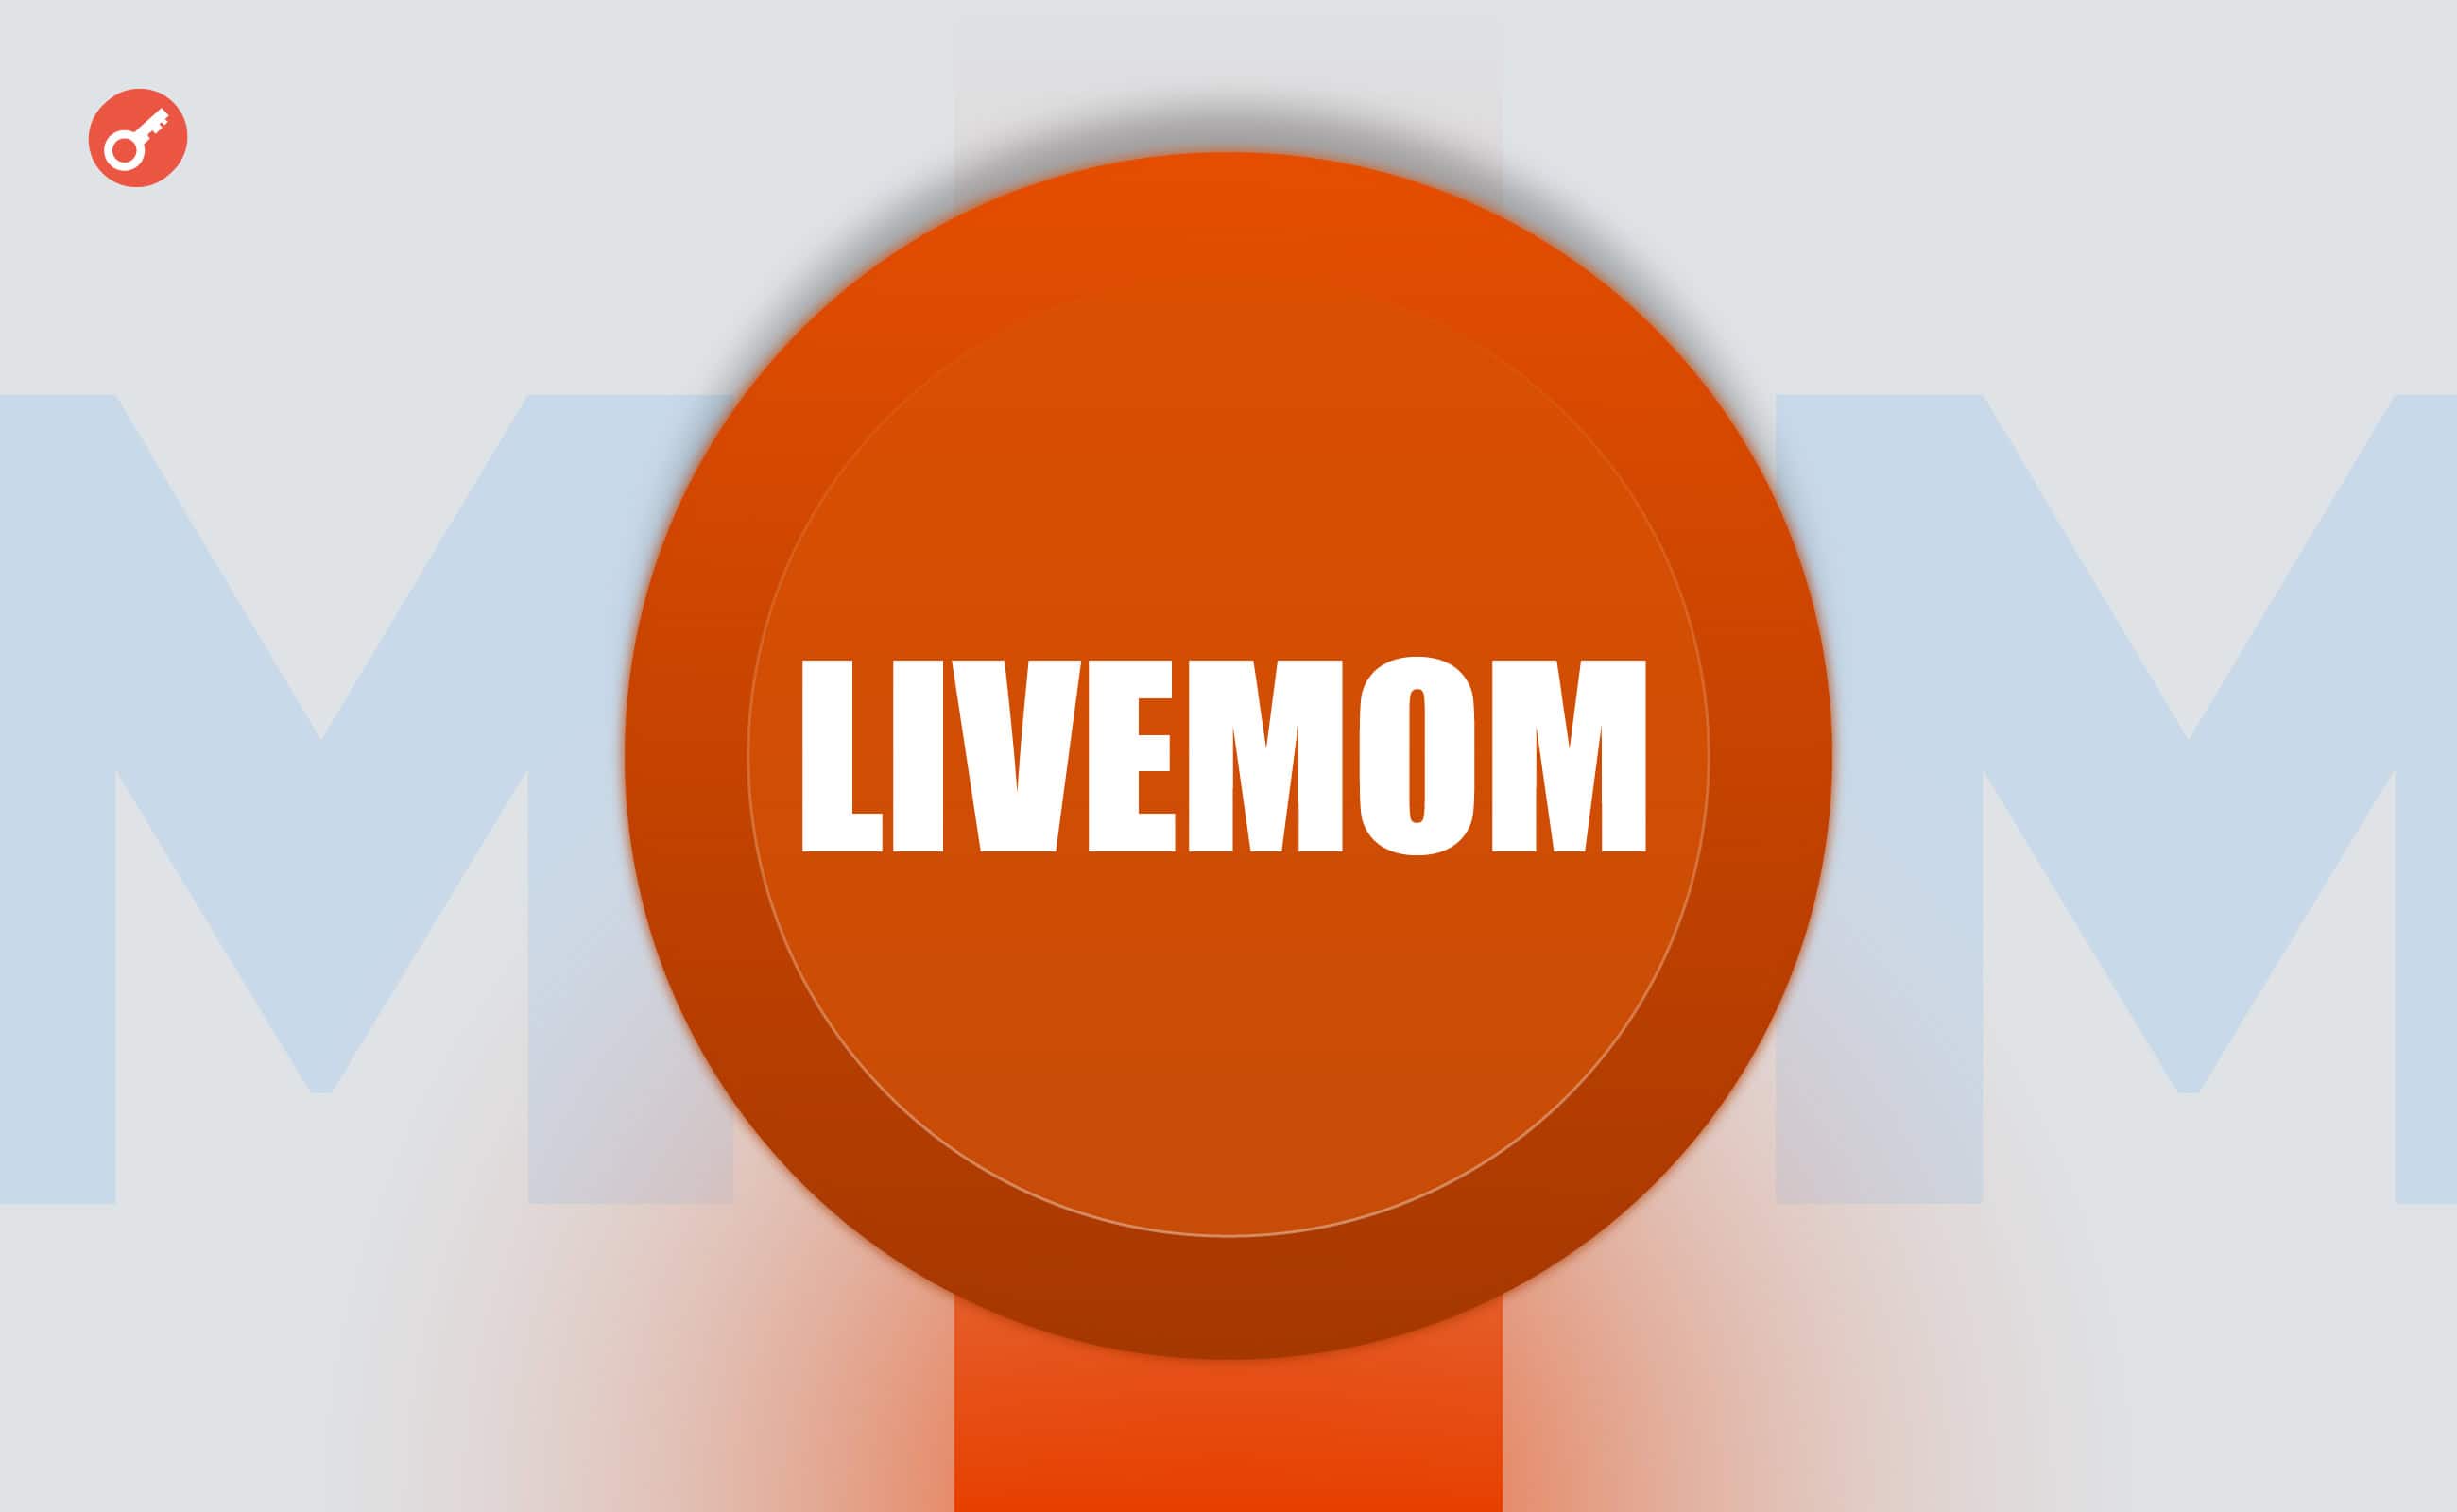 Підліток і його мати запустили токен LIVEMOM із сексуальним підтекстом. Головний колаж новини.